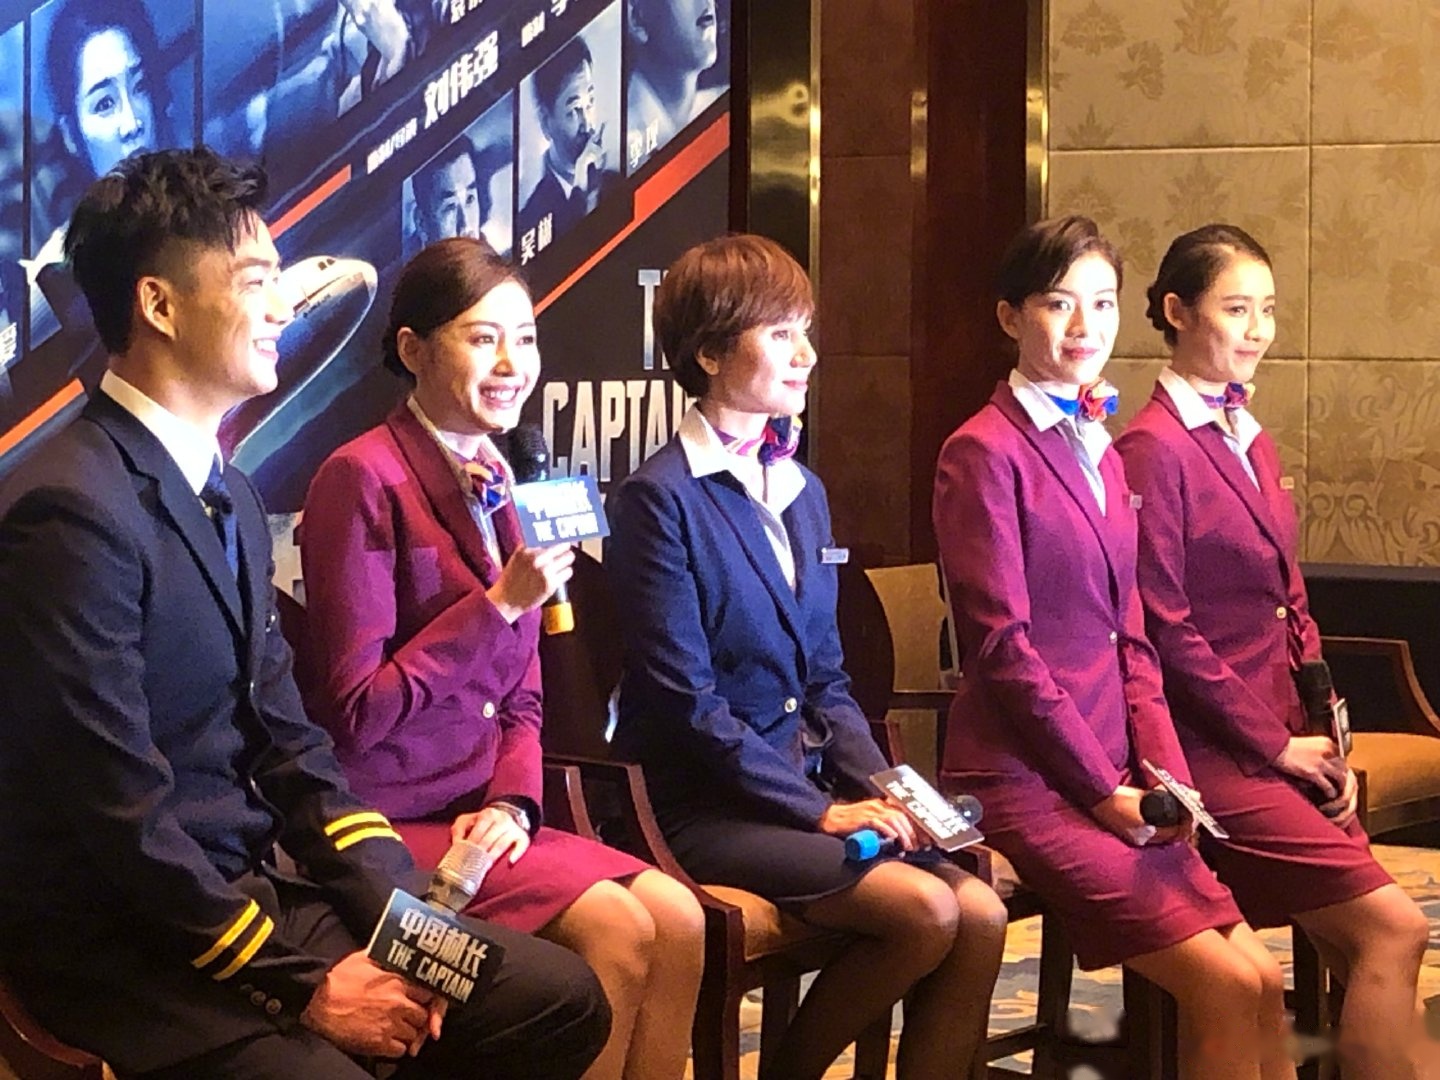 《中国机长》剧组今日在万米高空举办首映发布会,优酷全娱乐全程vlog